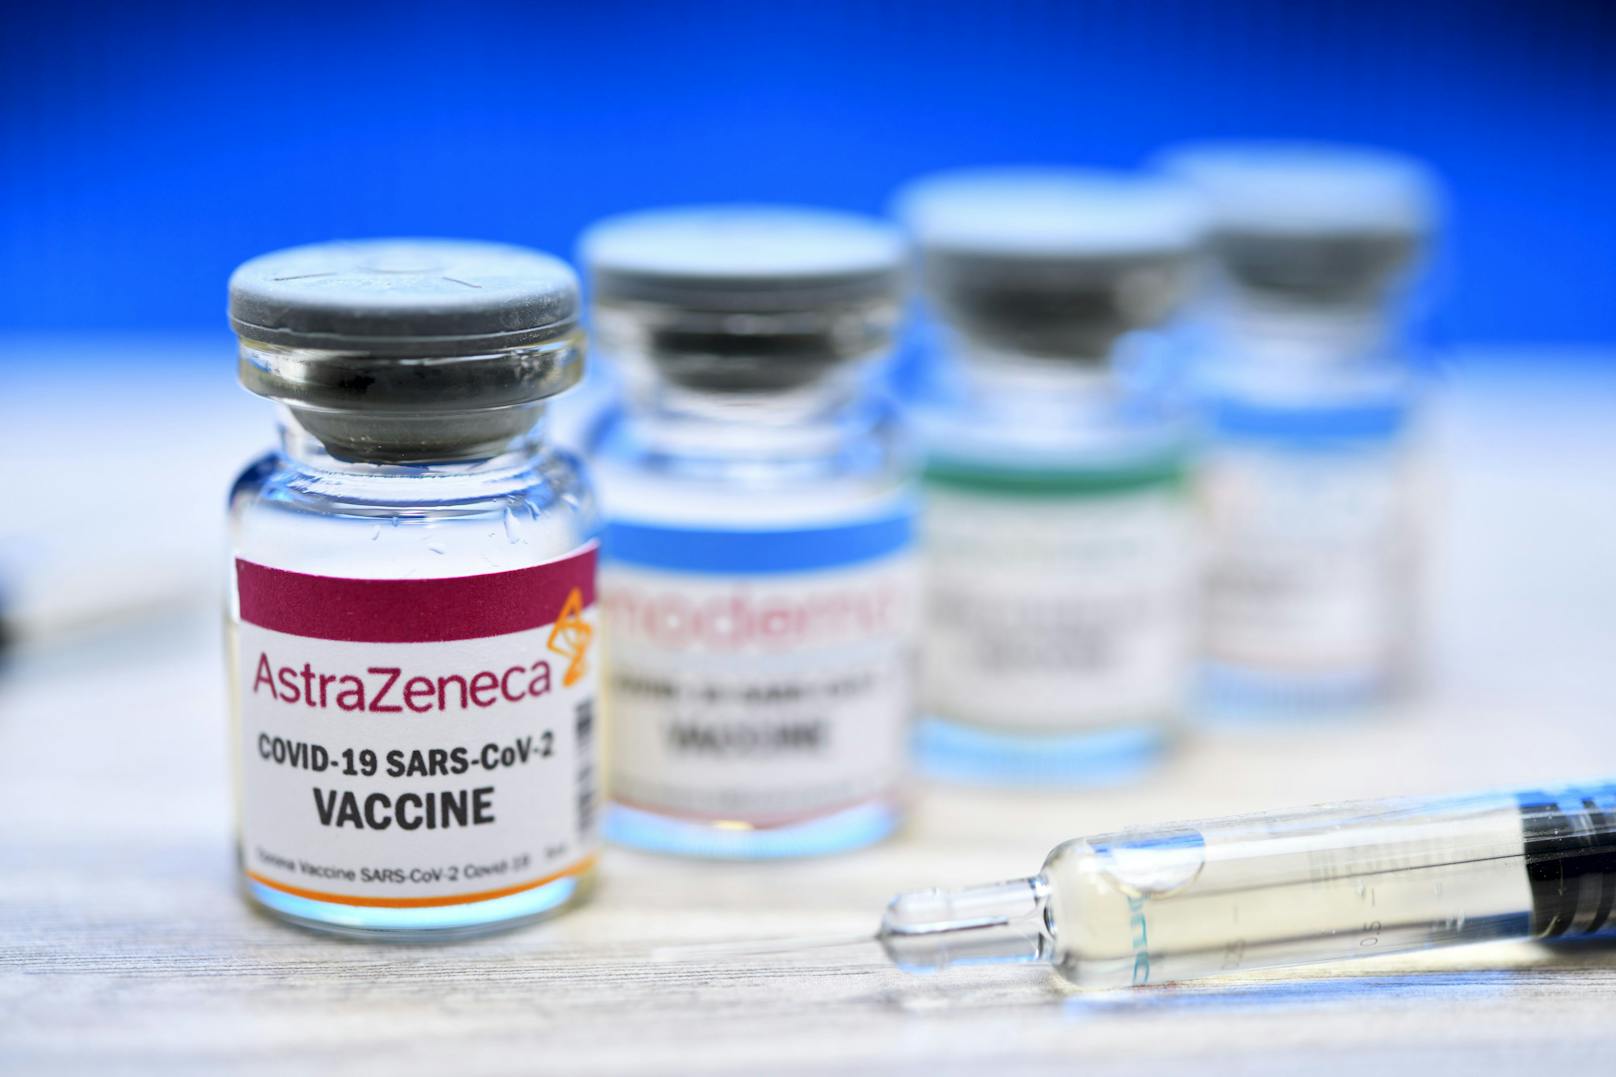 AstraZeneca ließ eine Krisensitzung zu den Impfstofflieferungen platzen, will sie nun doch stattfinden lassen.